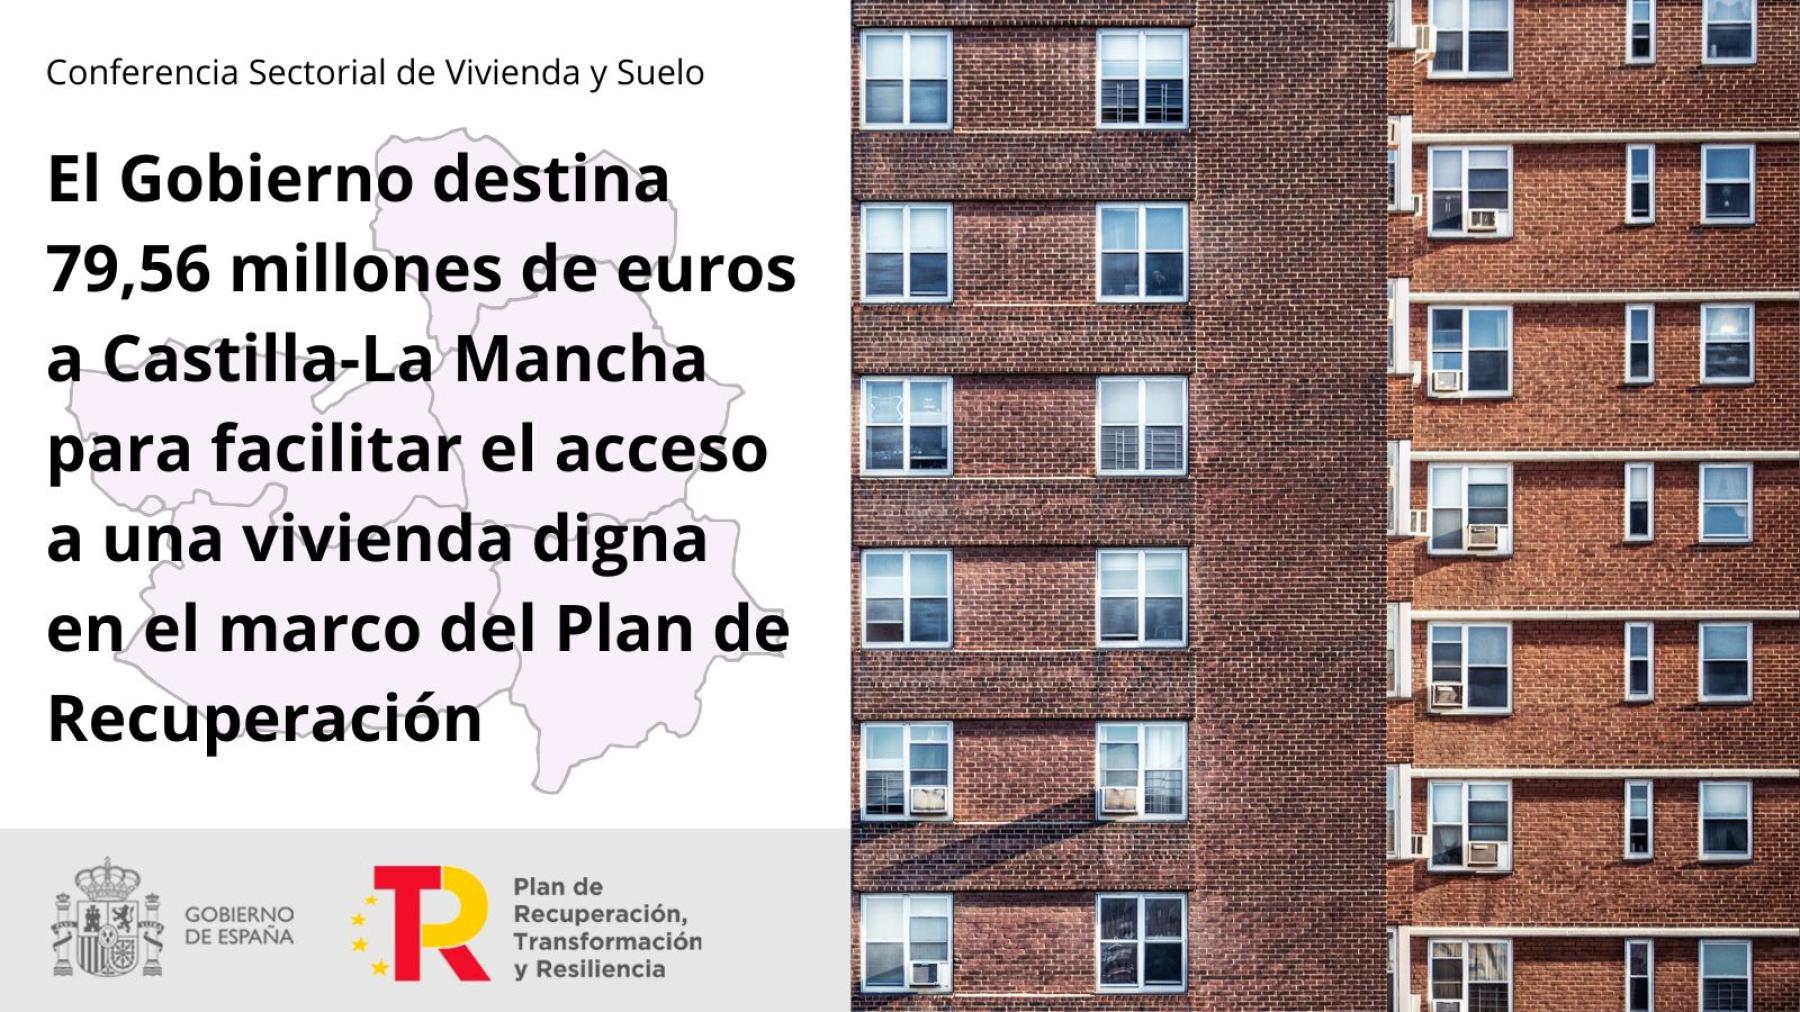 El Gobierno destina 79,56 millones de euros a Castilla-La Mancha para facilitar el acceso a una vivienda digna en el marco del Plan de Recuperación